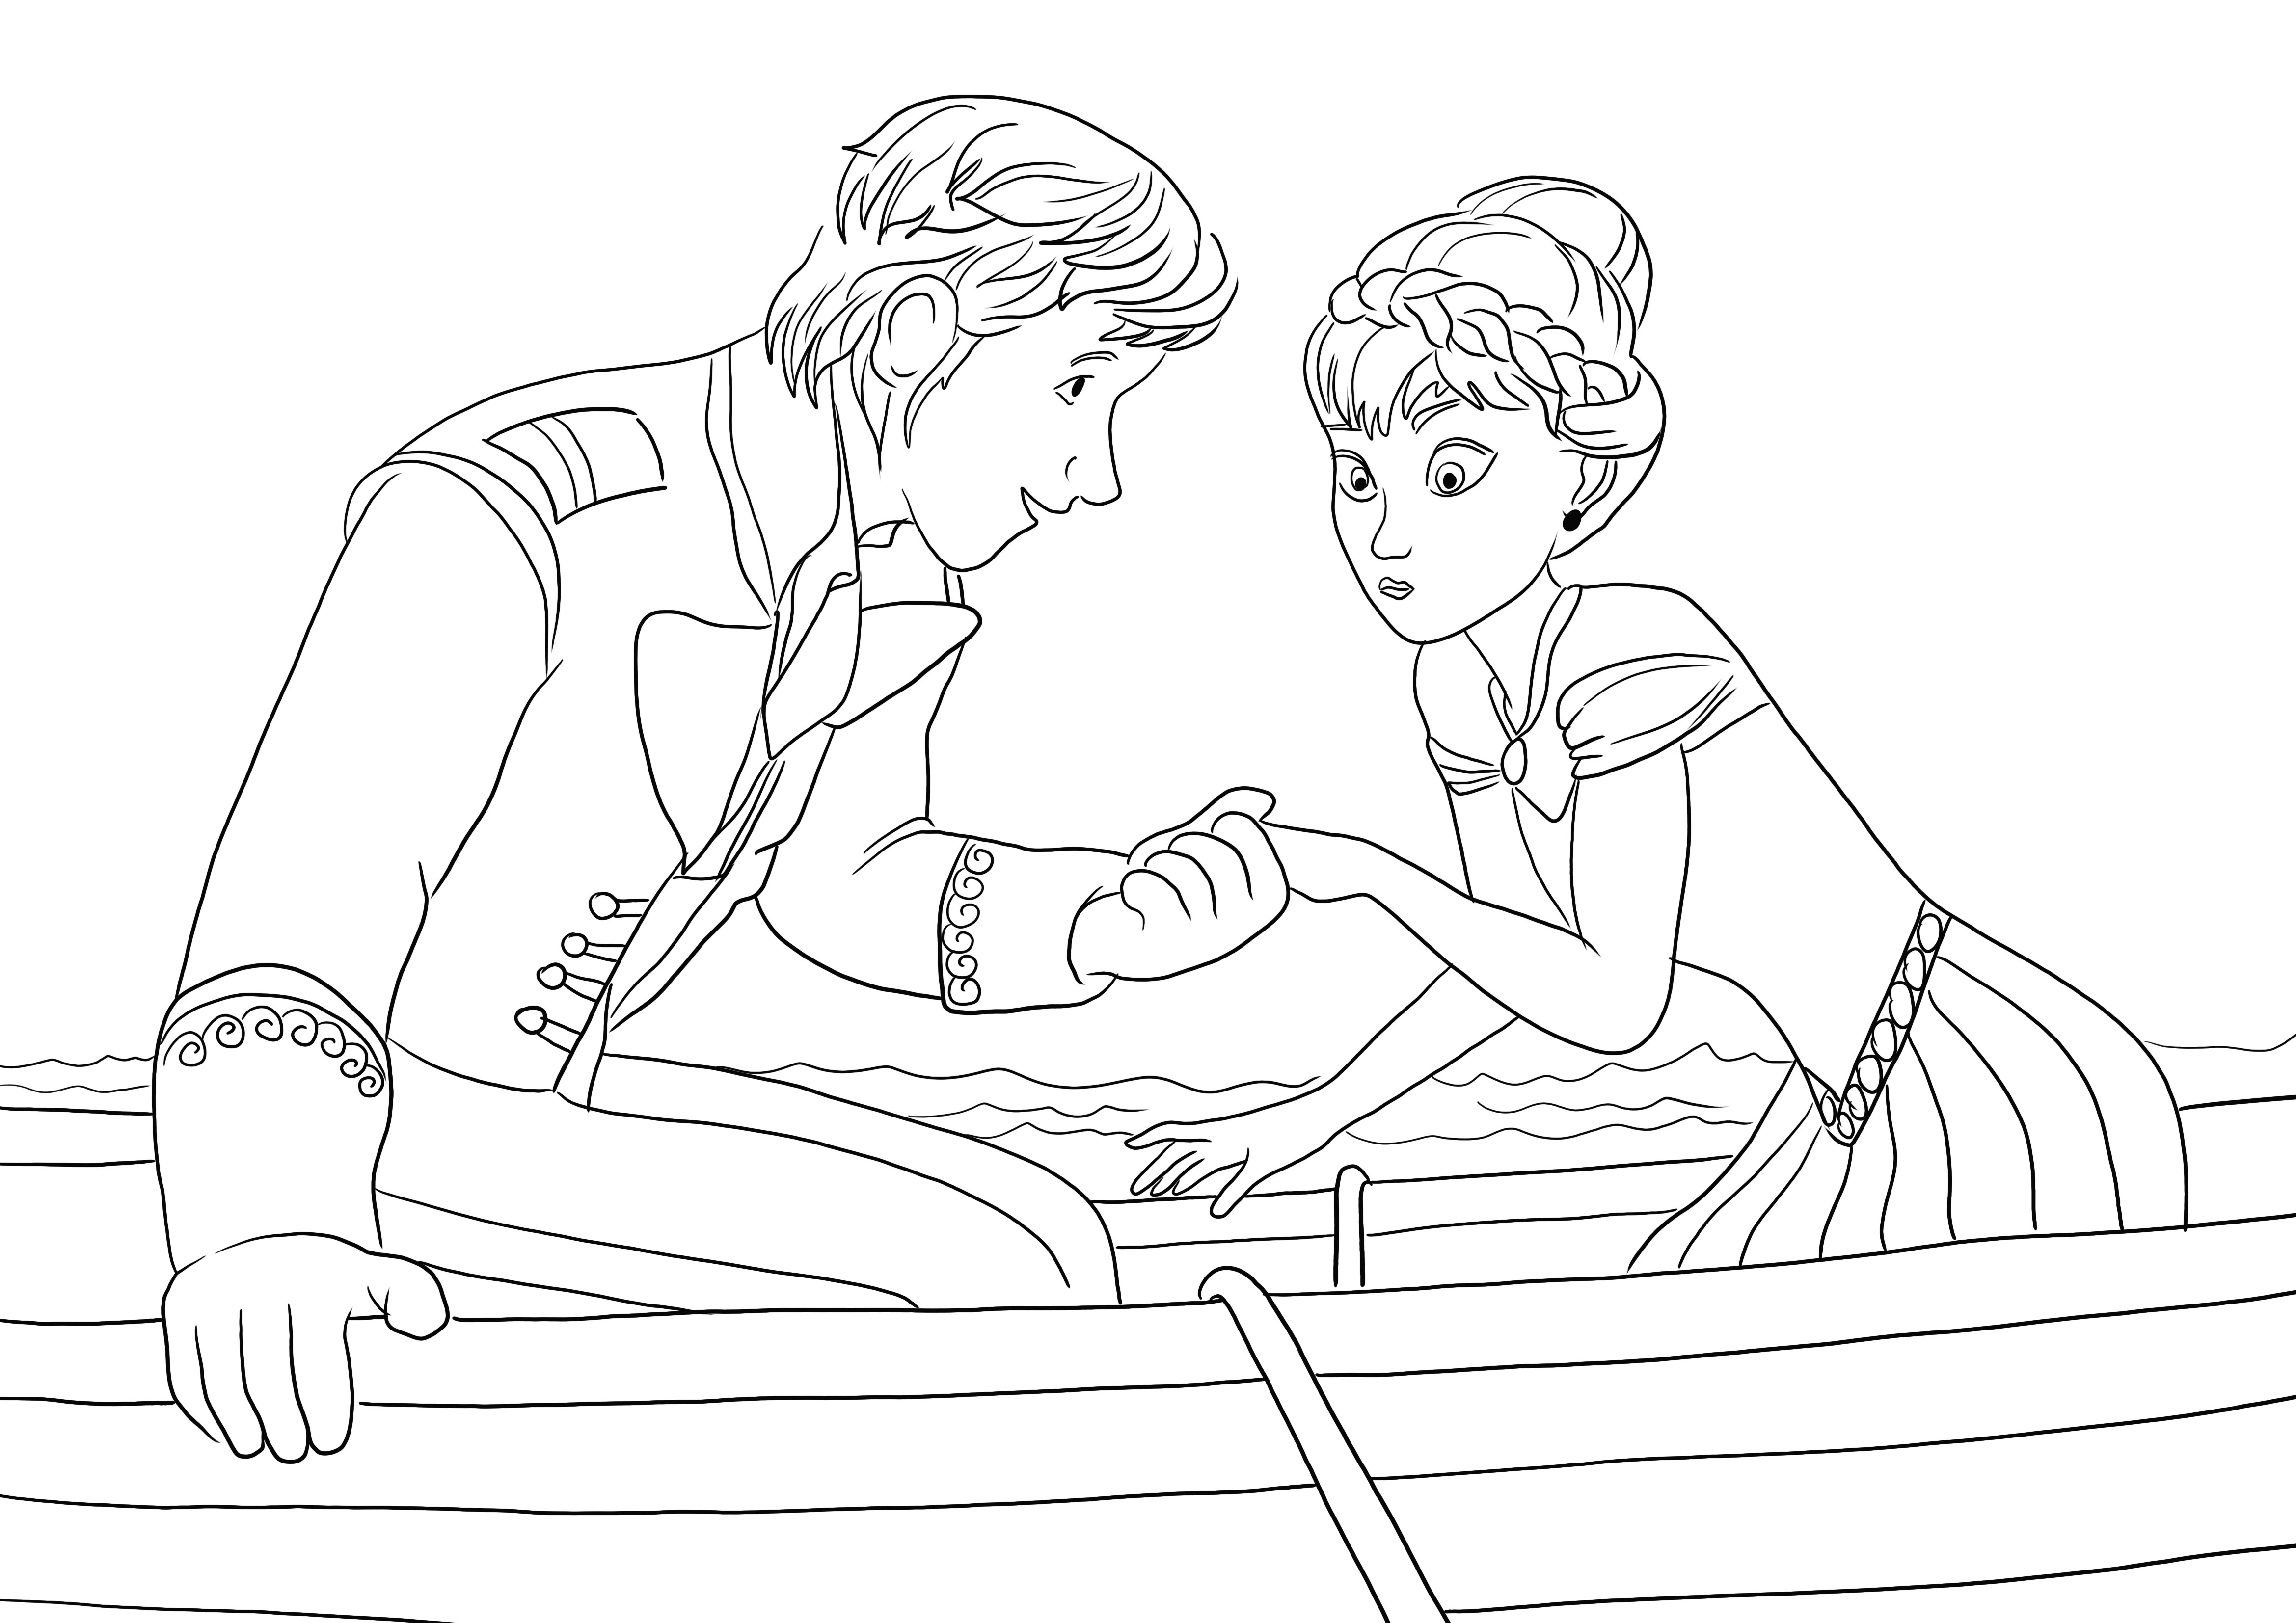 Anna bertemu Hans untuk pertama kalinya - halaman mewarnai untuk diunduh gratis untuk diwarnai oleh anak-anak